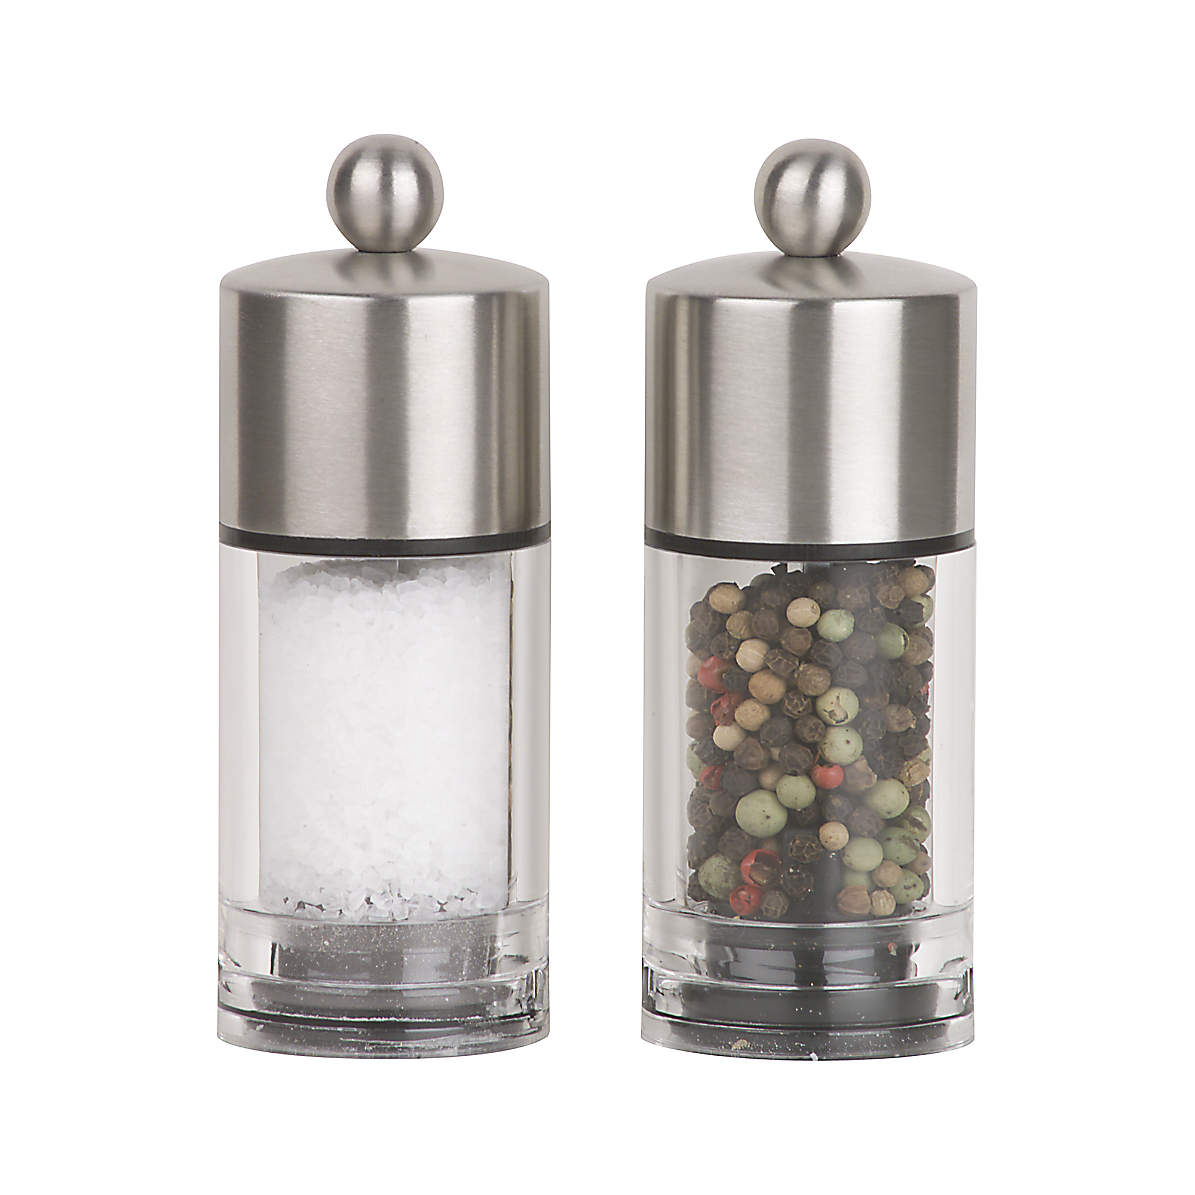 Alexander Salt & Pepper Mills – Tuesday Made